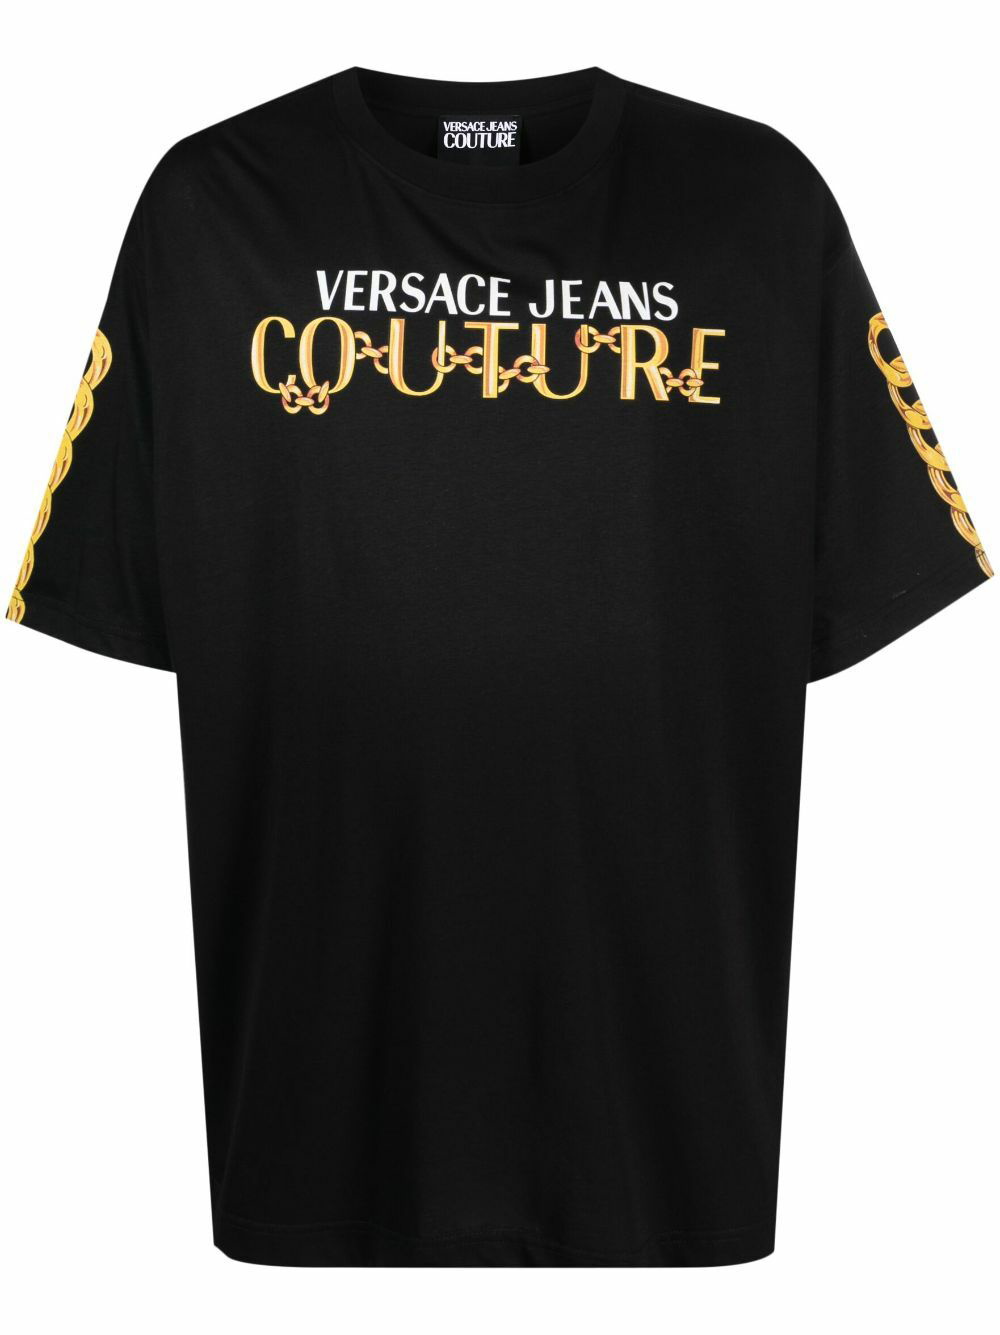 VERSACE JEANS COUTURE - Cotton T-shirt Versace